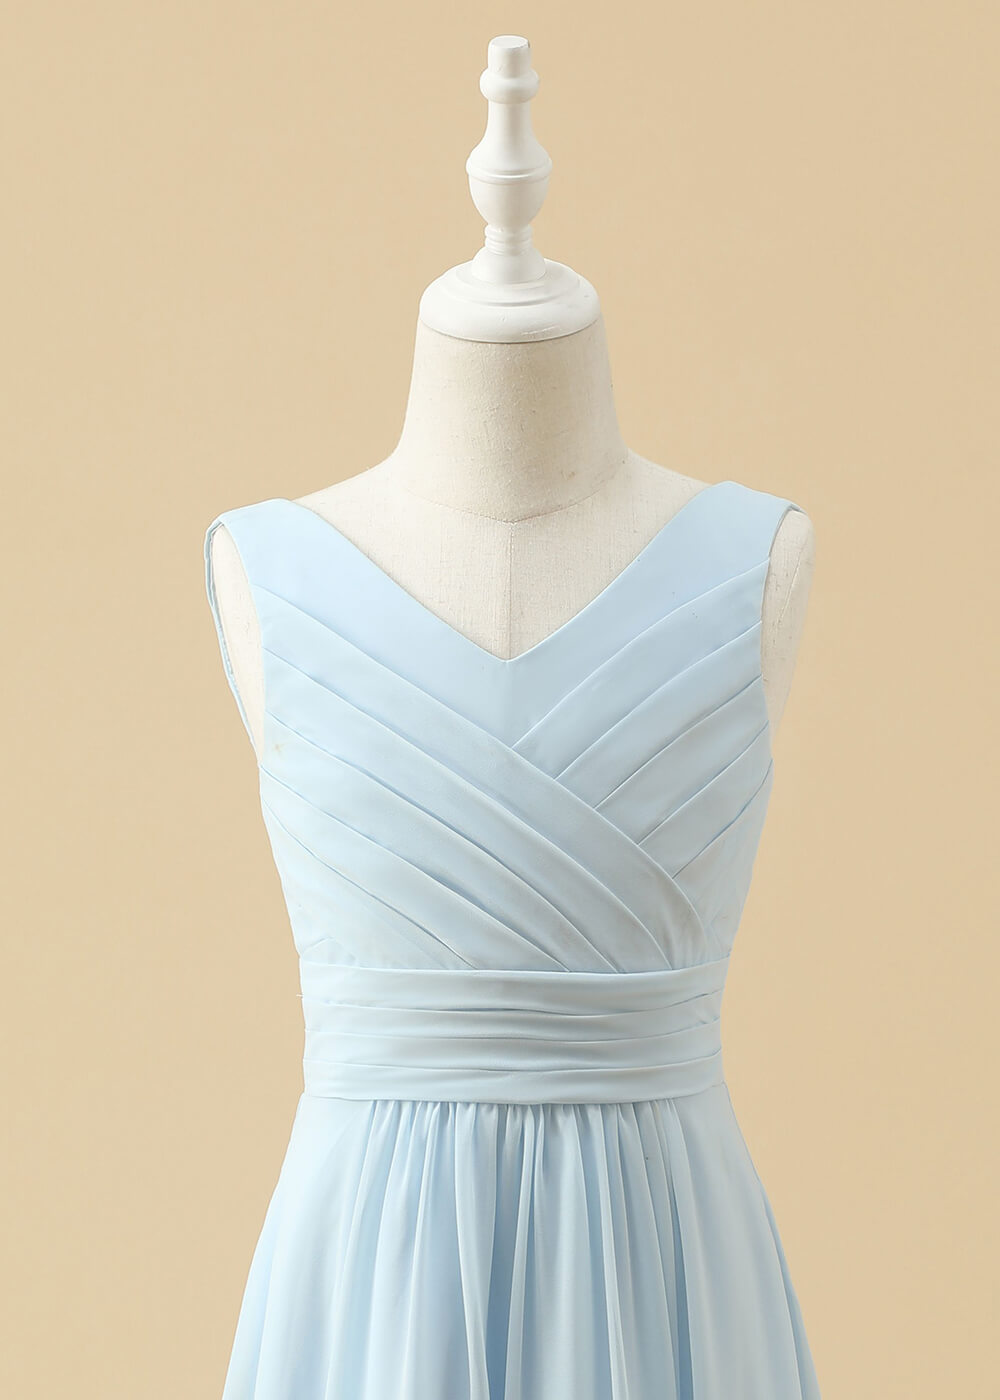 V-neck A-line Chiffon Maxi Junior Bridesmaid Dress